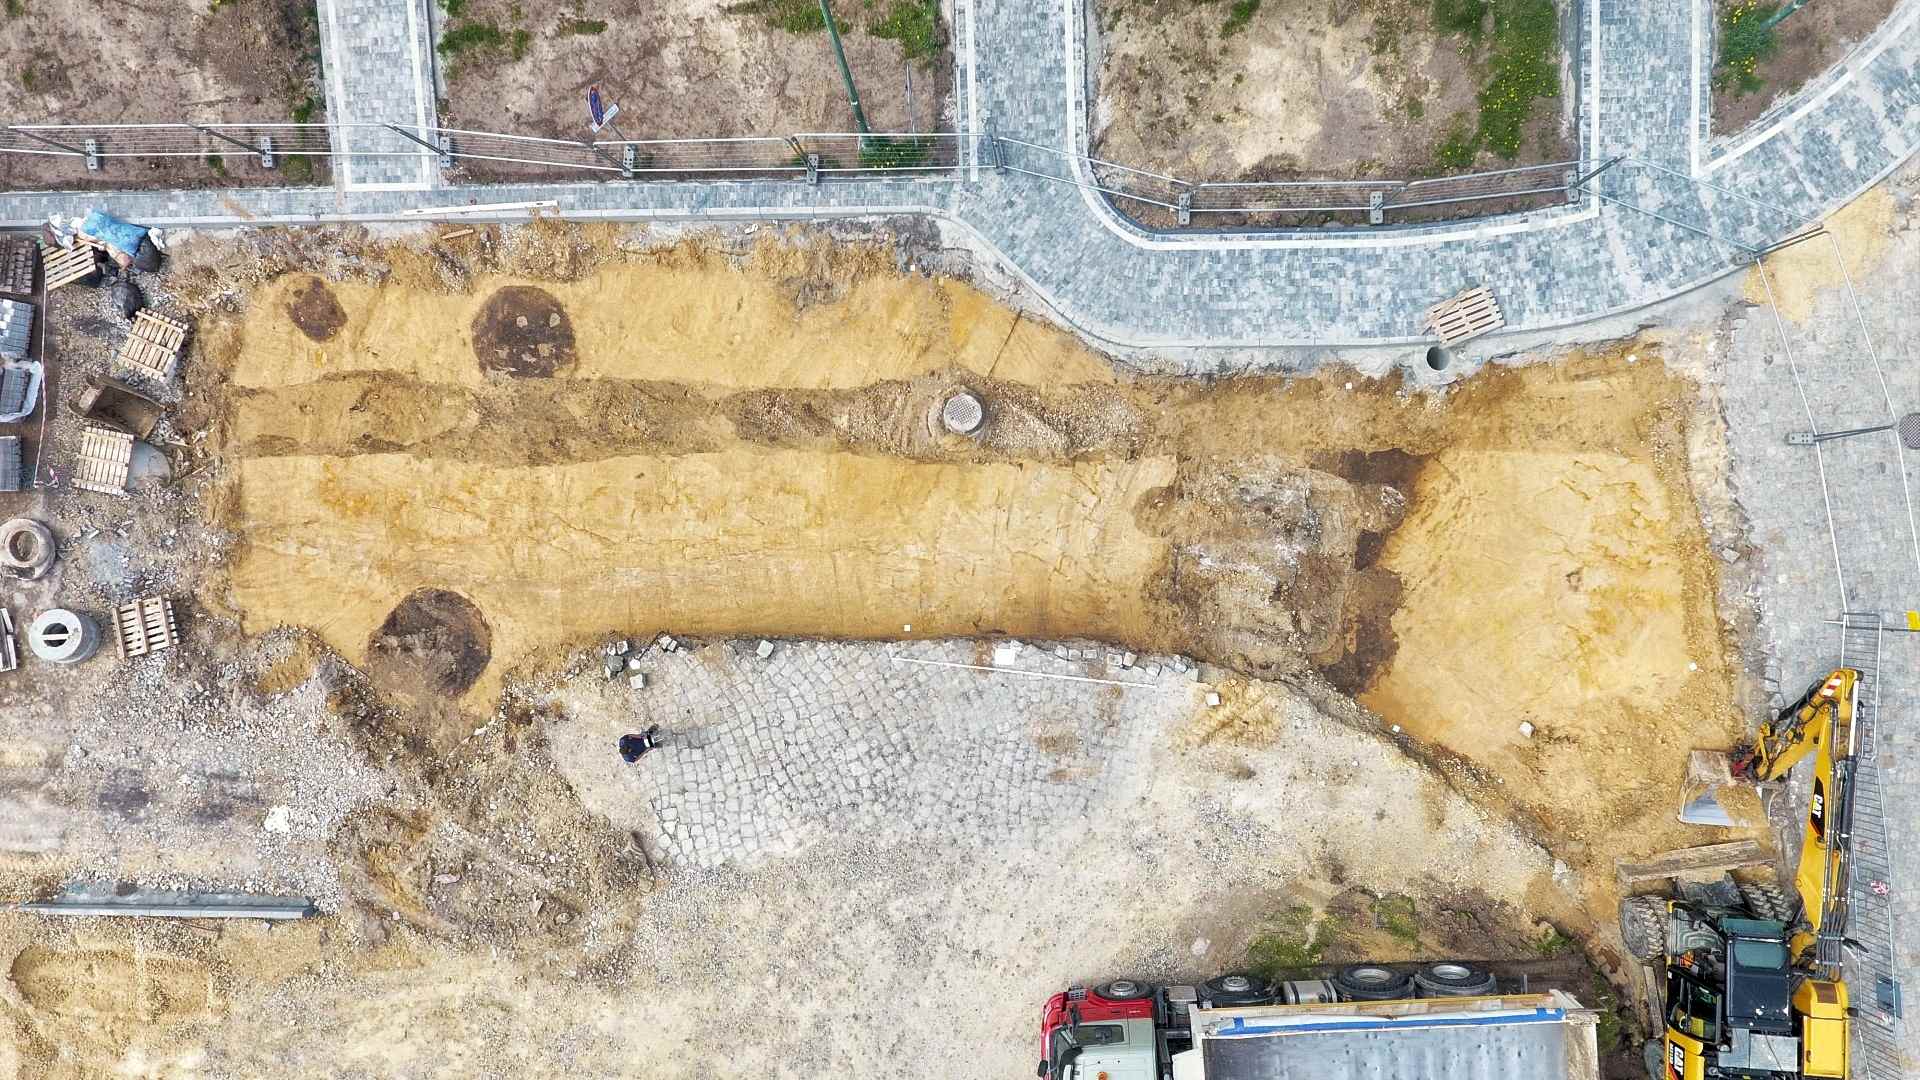 Bộ xương 7,000 năm tuổi được bảo quản tốt được khai quật trong quá trình cải tạo ở Ba Lan 2